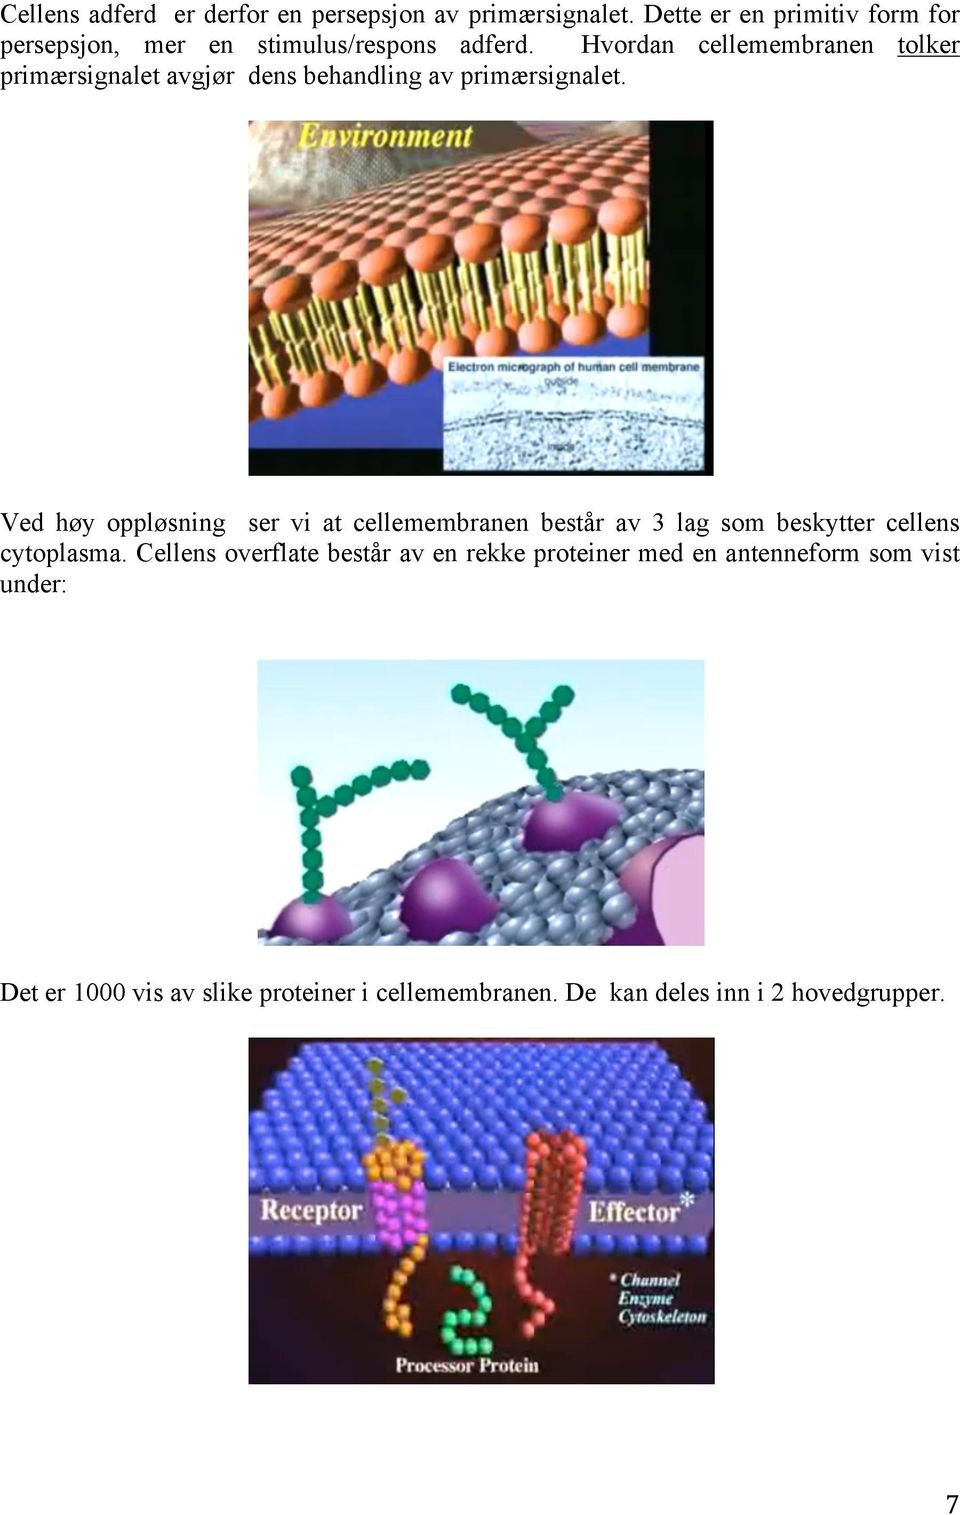 Hvordan cellemembranen tolker primærsignalet avgjør dens behandling av primærsignalet.